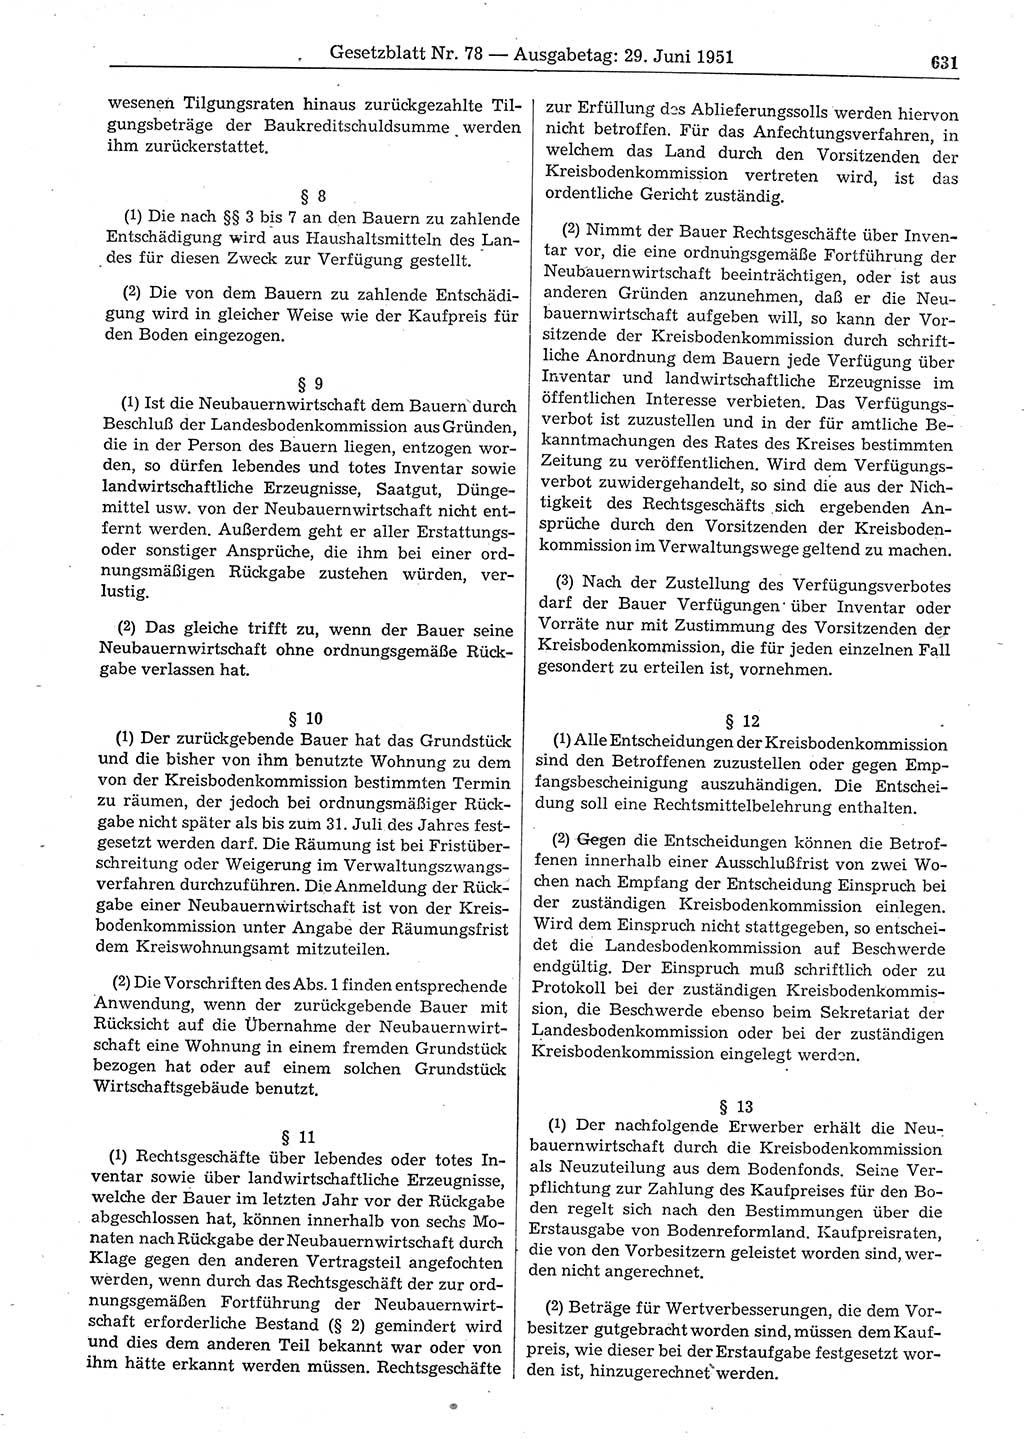 Gesetzblatt (GBl.) der Deutschen Demokratischen Republik (DDR) 1951, Seite 631 (GBl. DDR 1951, S. 631)